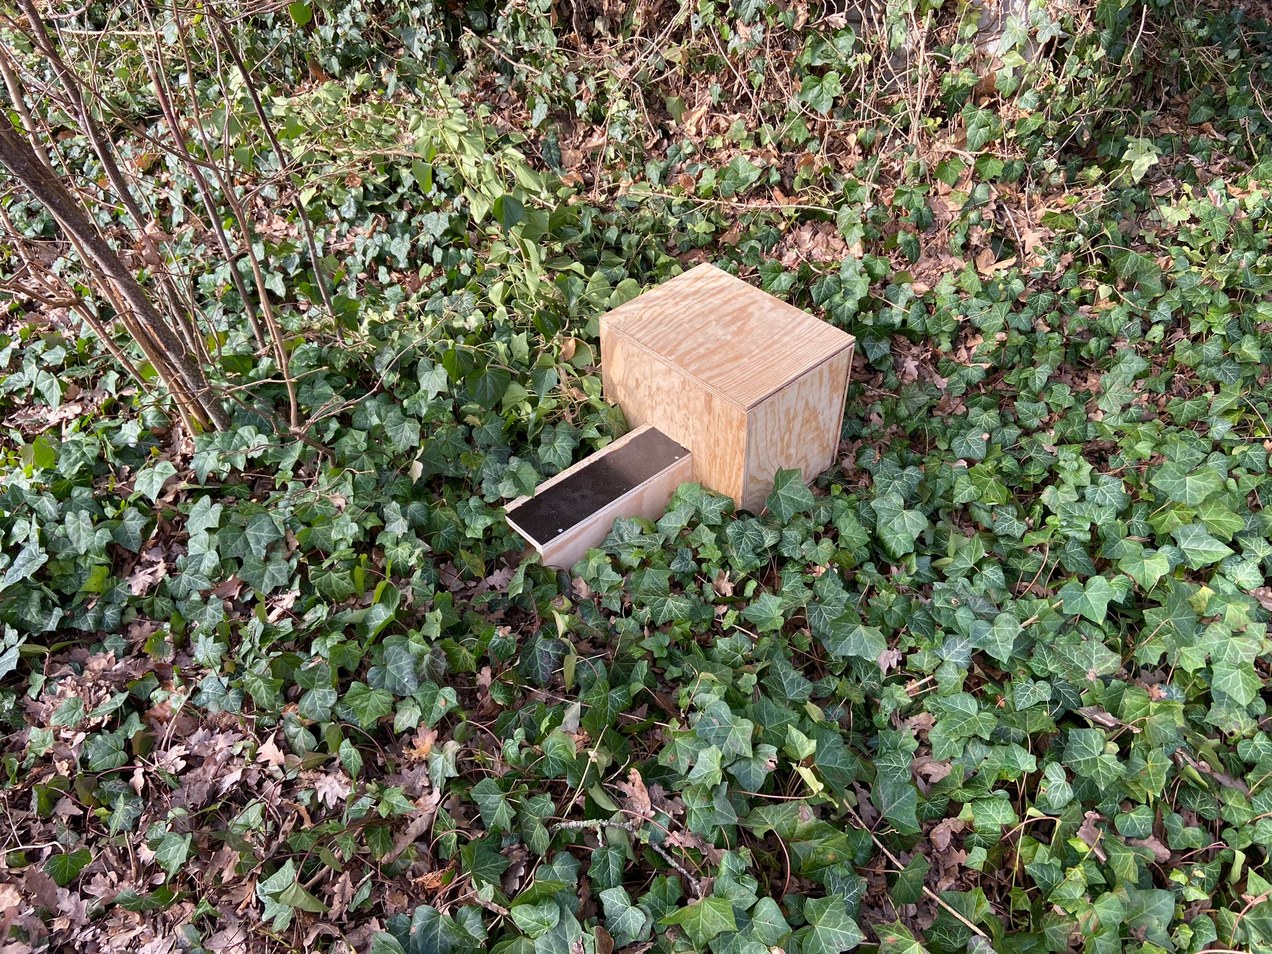 Een egelhuisje dat geplaatst wordt om egels een veilig heenkomen te bieden.